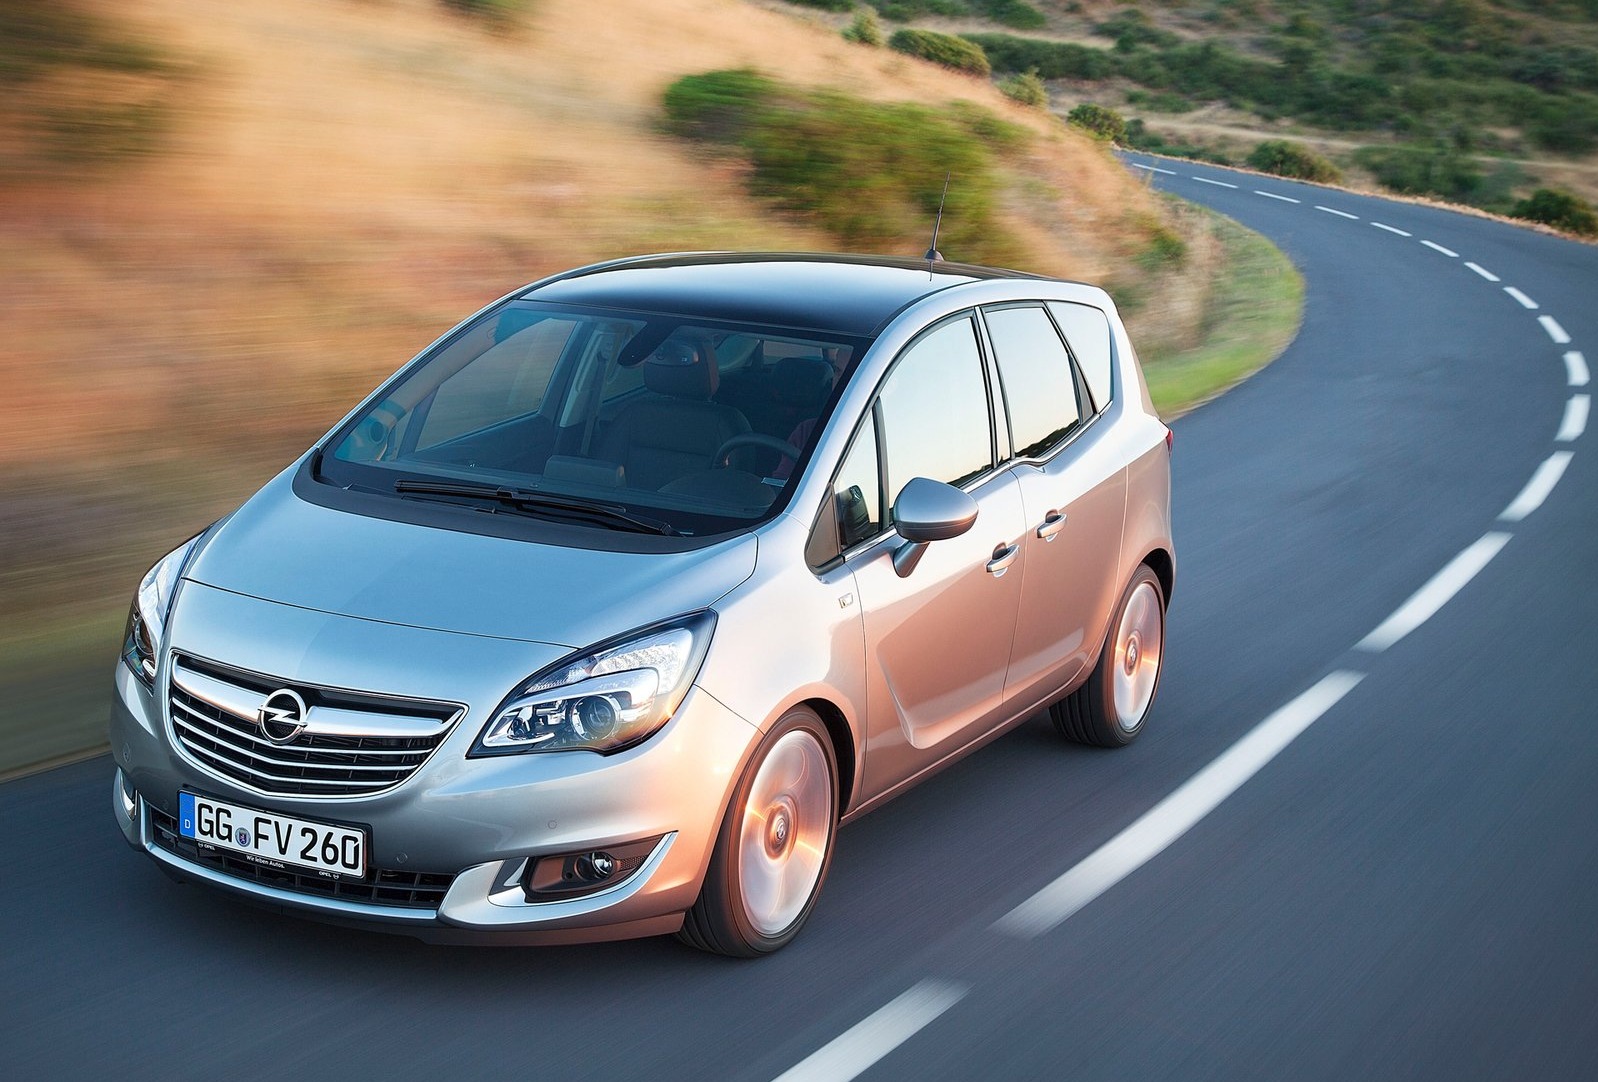 Opel Meriva: dimensioni, interni, motori, prezzi e concorrenti - AutoScout24